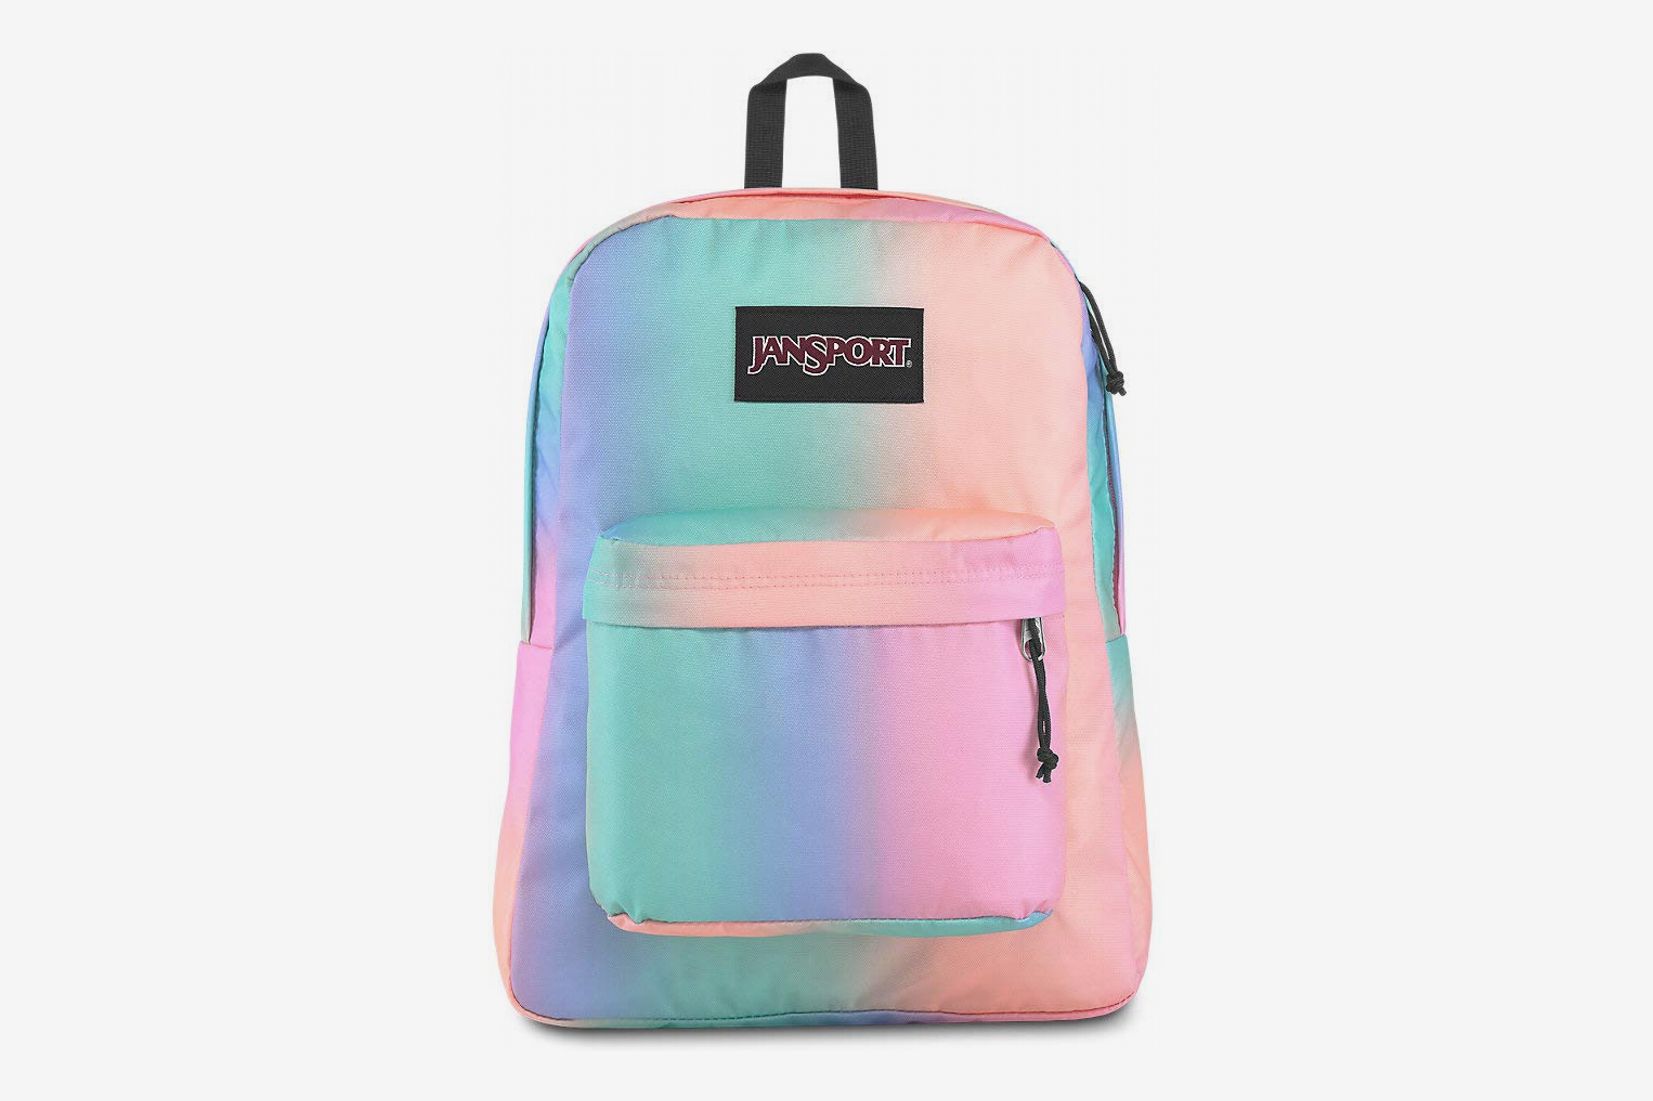 Black Rucksack Unisex Plain Backpack Canvas Travel School Shoulder Book Bag